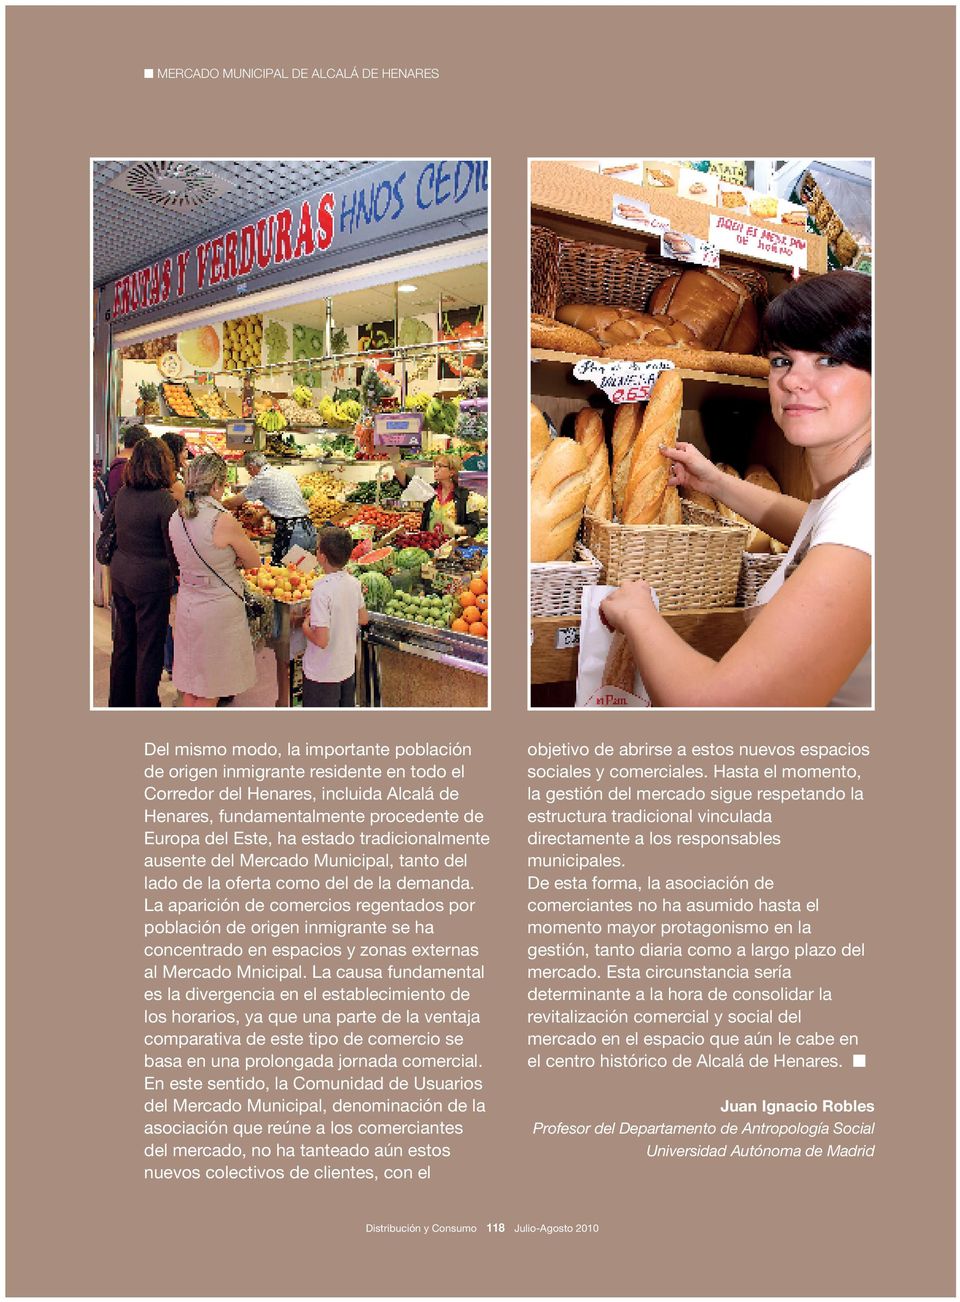 La aparición de comercios regentados por población de origen inmigrante se ha concentrado en espacios y zonas externas al Mercado Mnicipal.